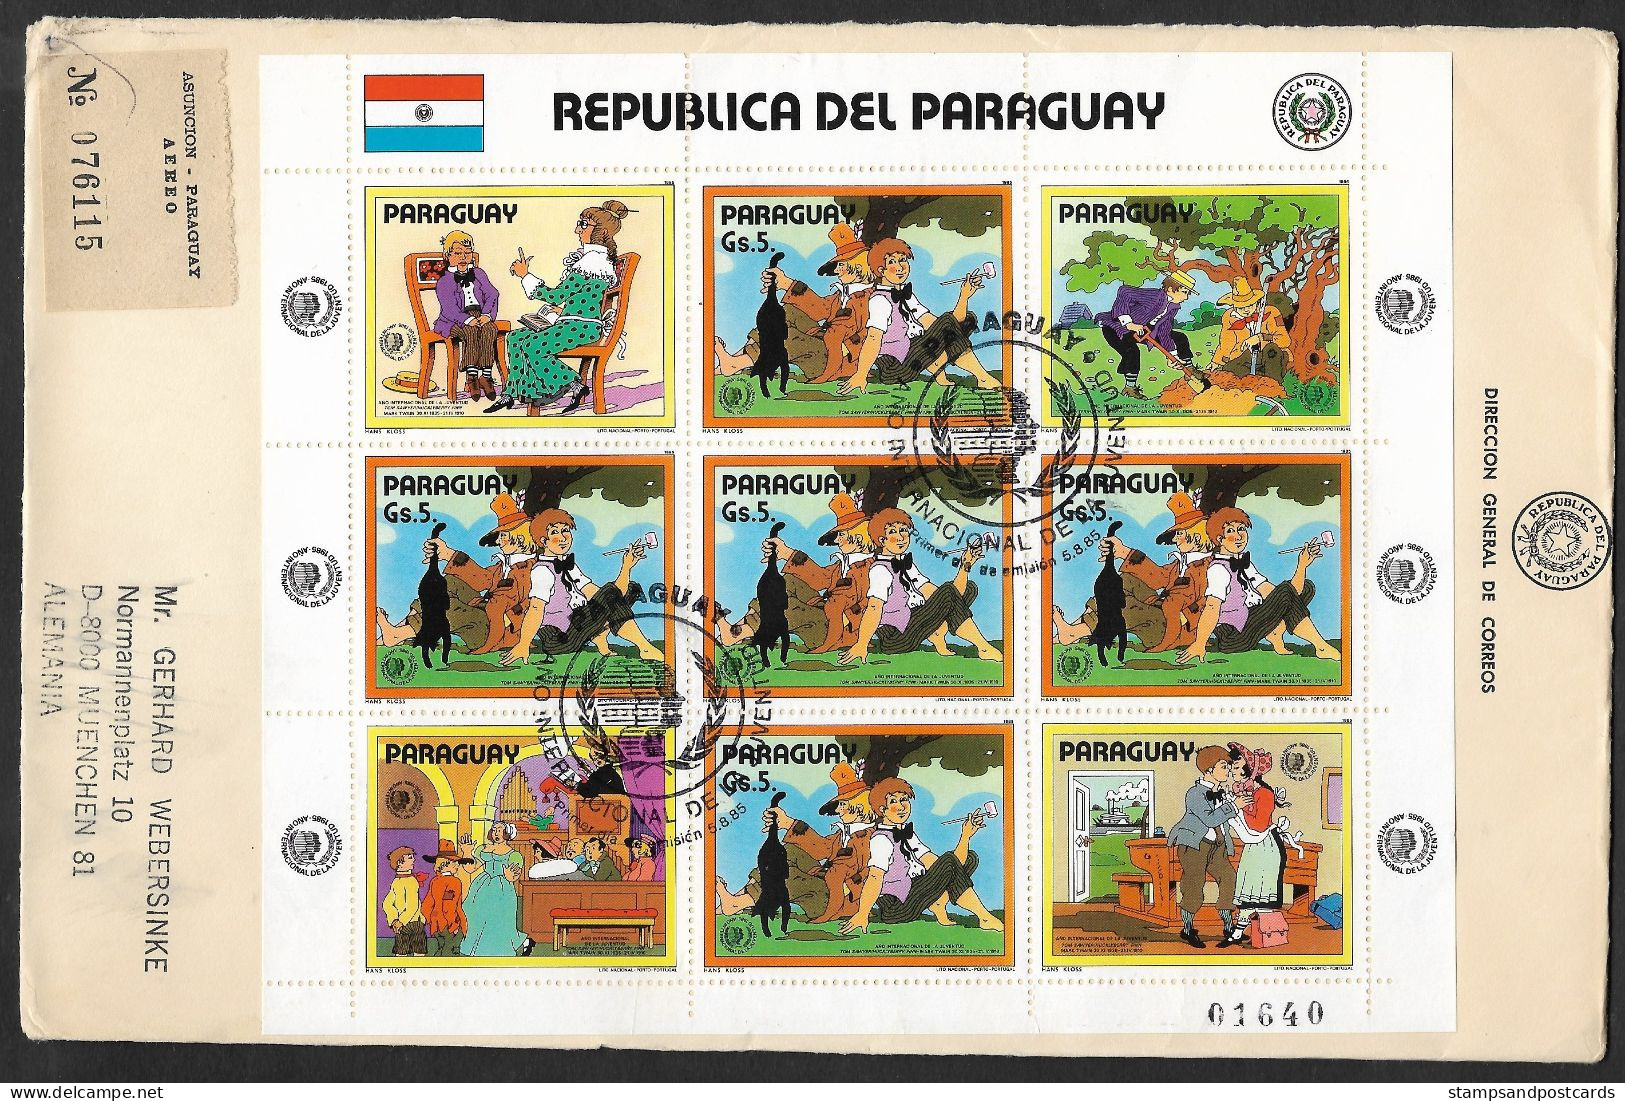 Paraguay 1985 FDC Recommandée Mark Twain Huckleberry Finn Tom Sawyer Année Internationale Jeunesse R FDC Int. Youth Year - Verhalen, Fabels En Legenden